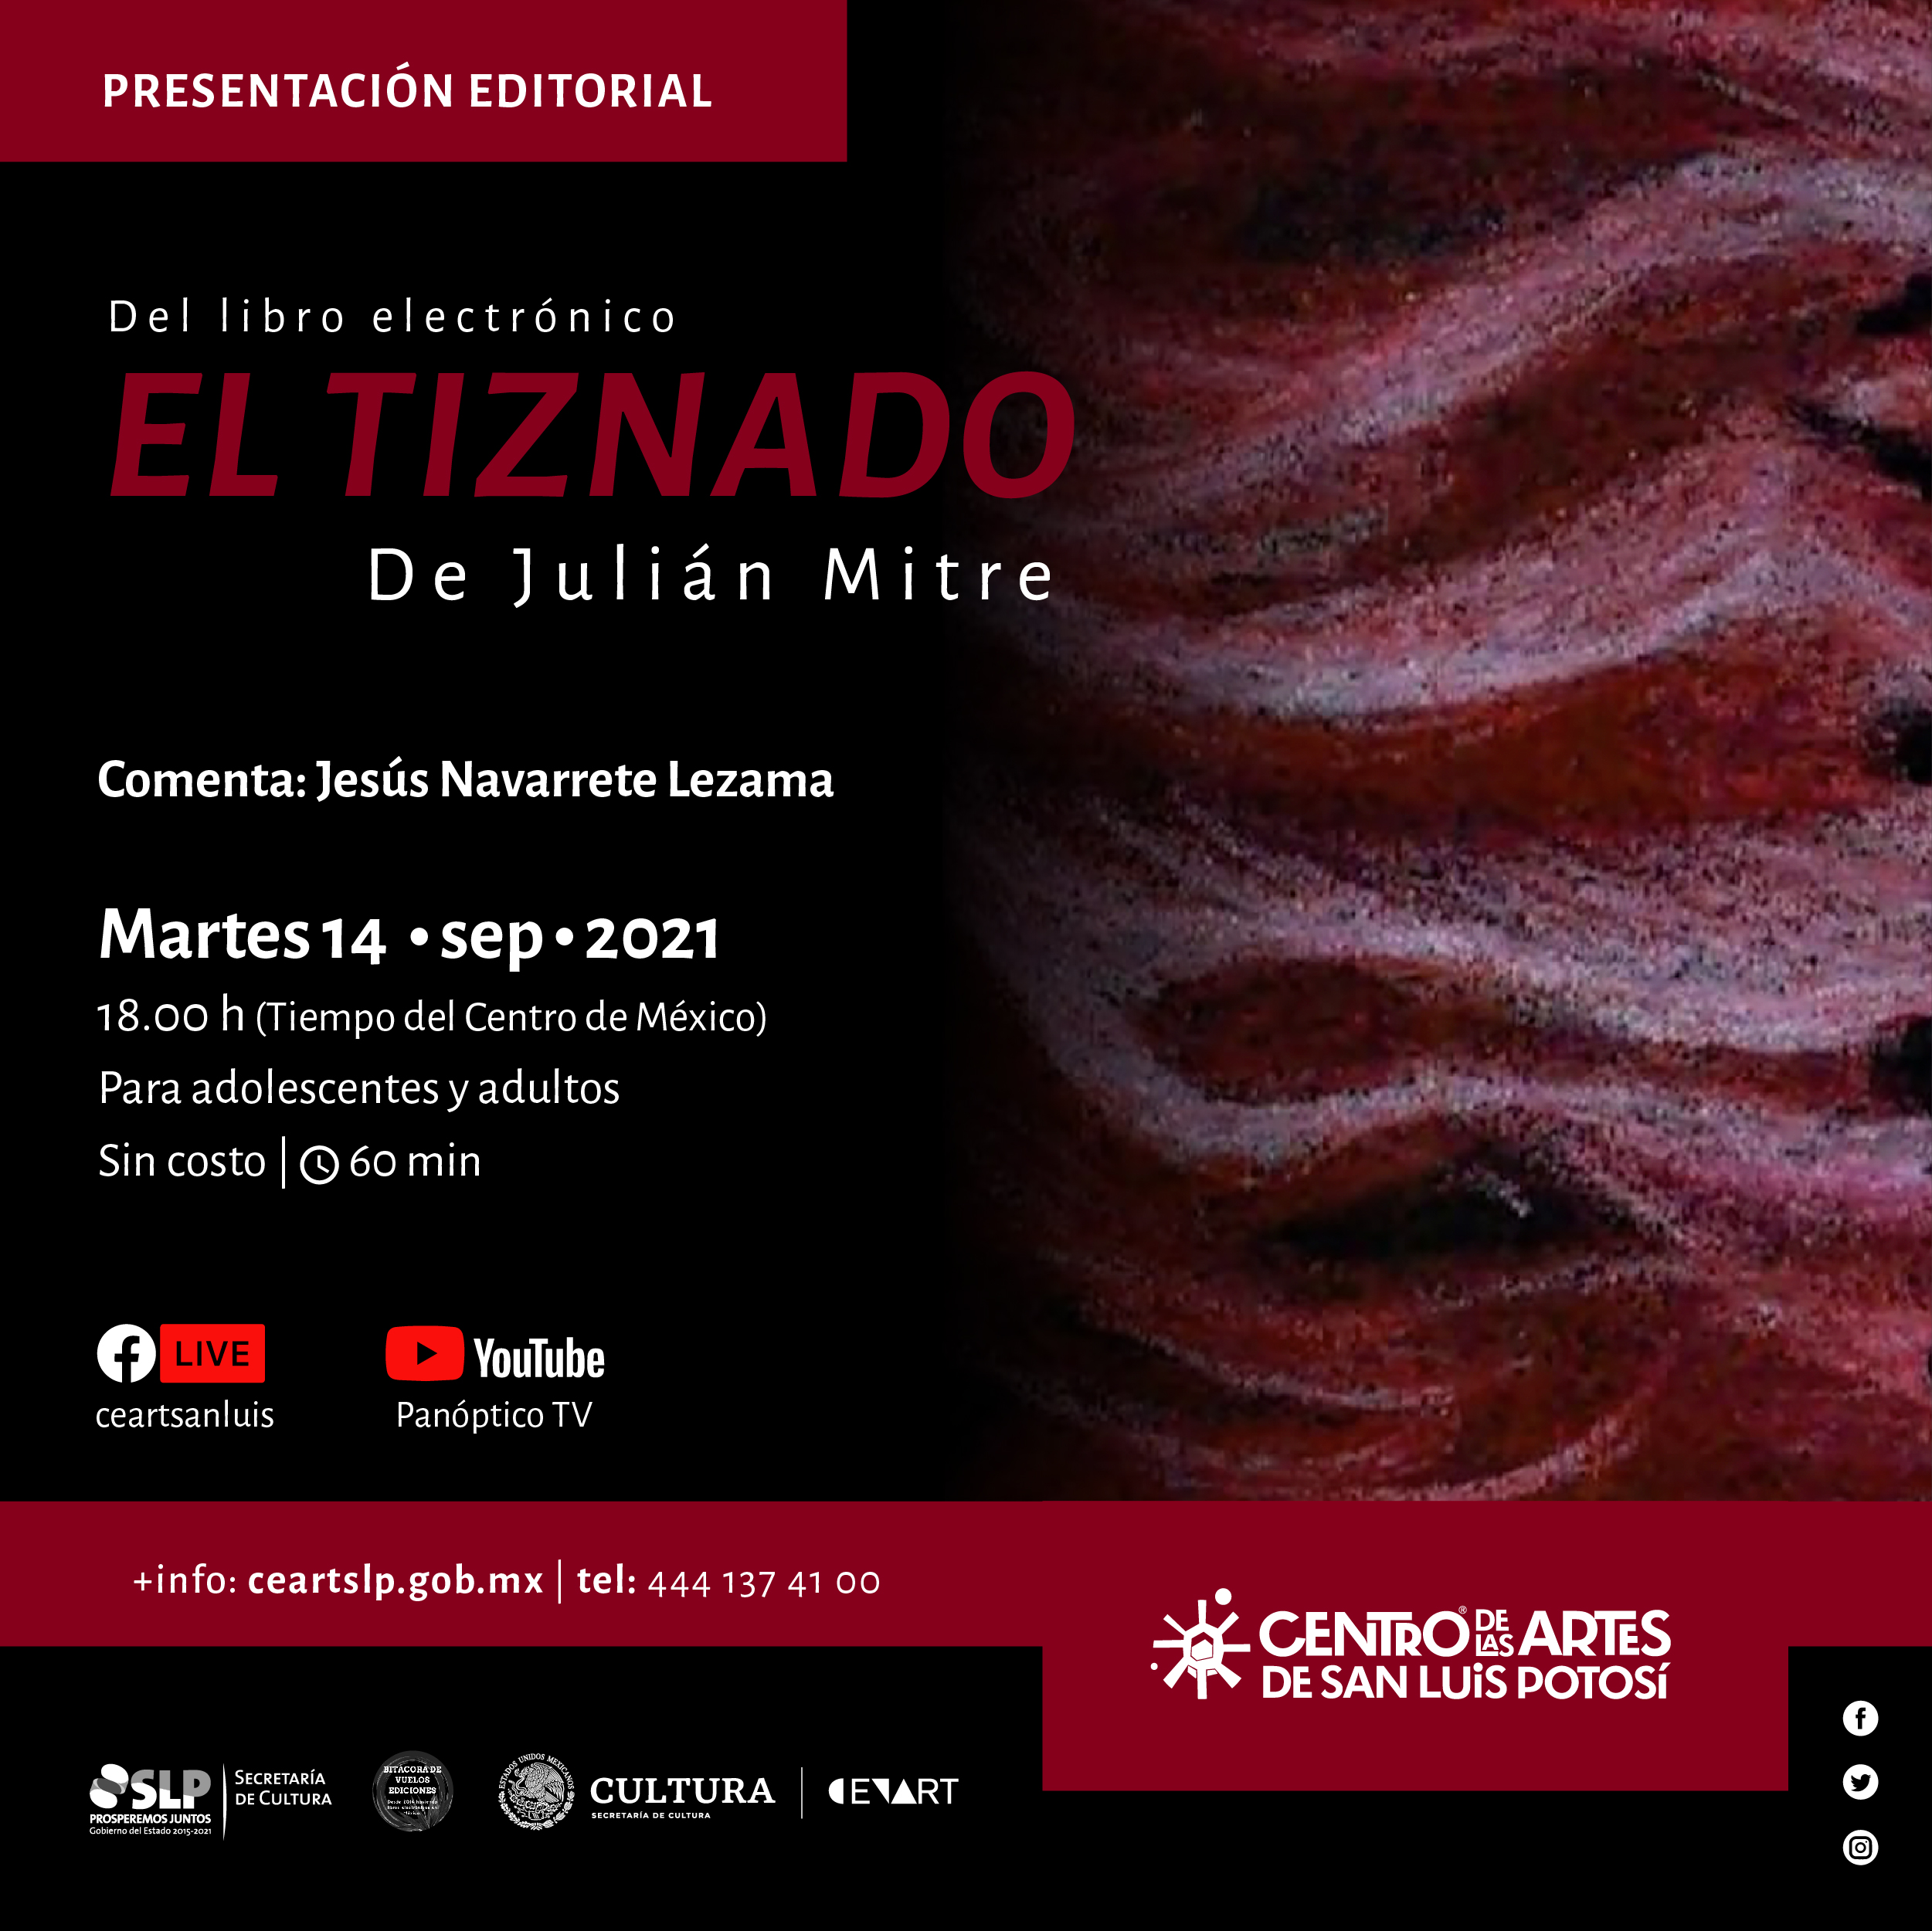 La Secretaría de Cultura de San Luis Potosí, invita al público en general a la presentación del libro electrónico de narrativa y cuento “El tiznado”